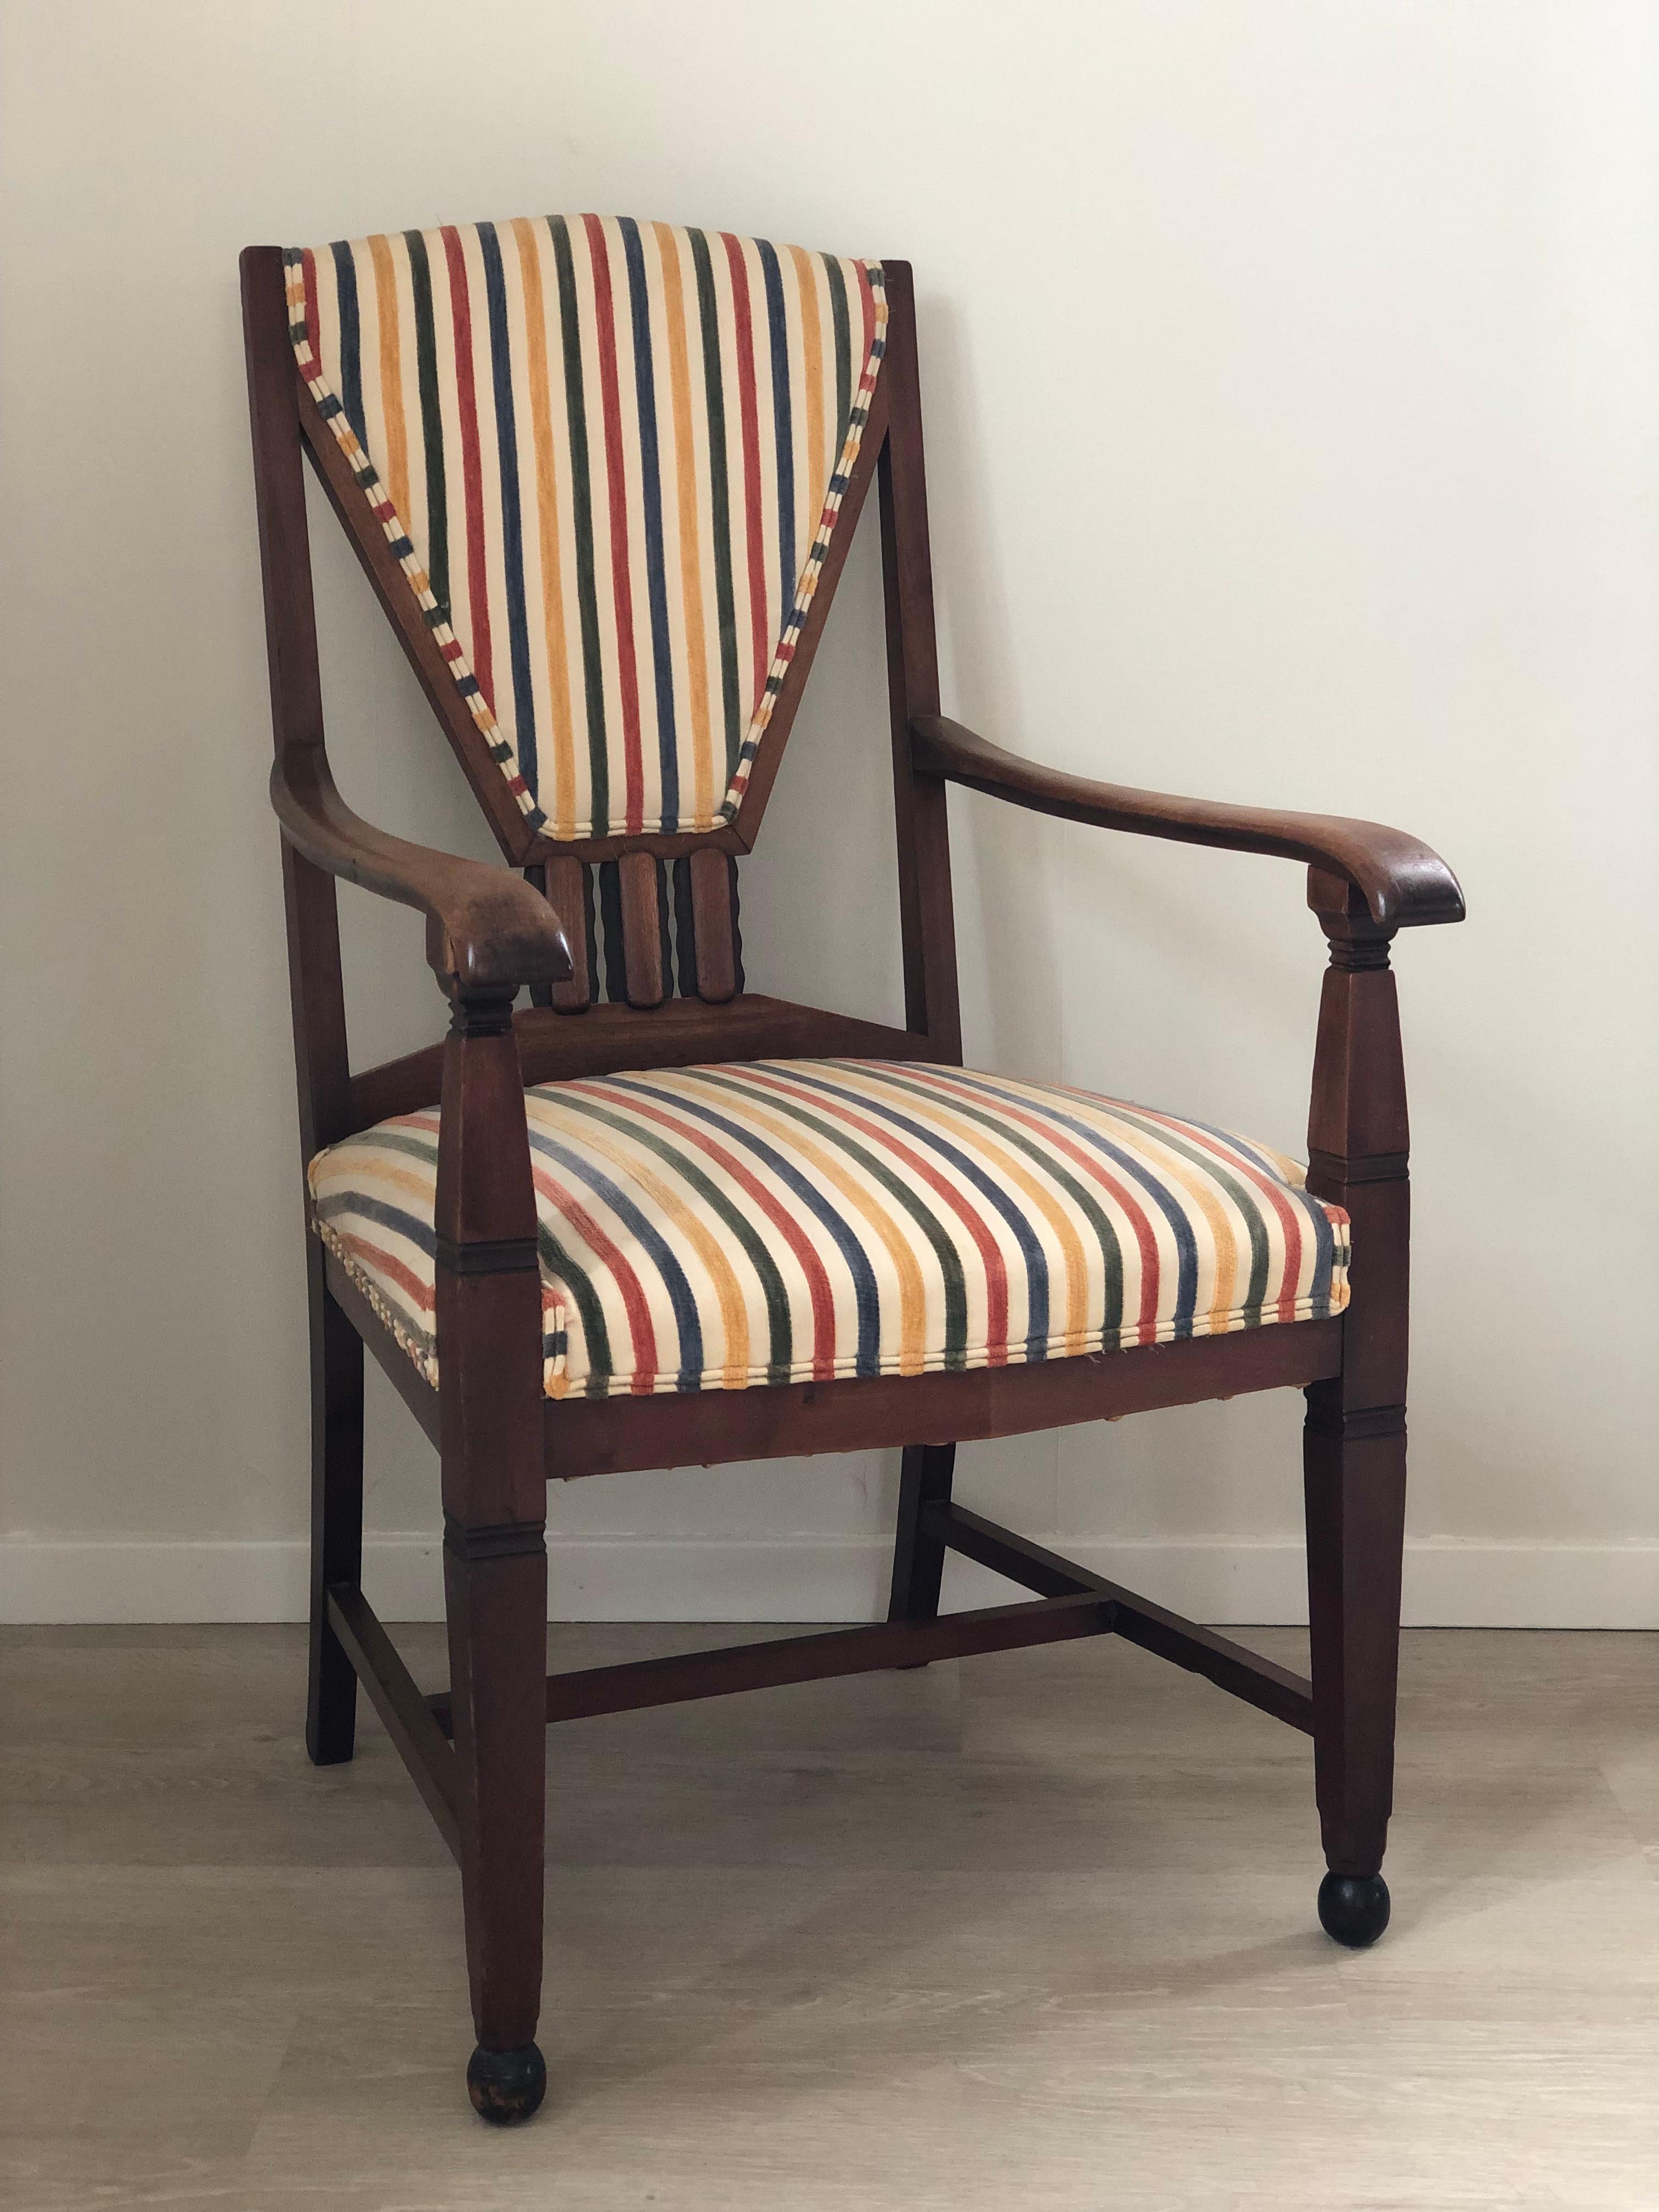 Ensemble unique de fauteuils de l'école d'Amsterdam, de style Art déco et de haute qualité artisanale, provenant des Pays-Bas, années 1930. Les grands fauteuils ont été conçus et fabriqués par le fabricant de meubles 't Woonhuys d'Amsterdam. Chaises